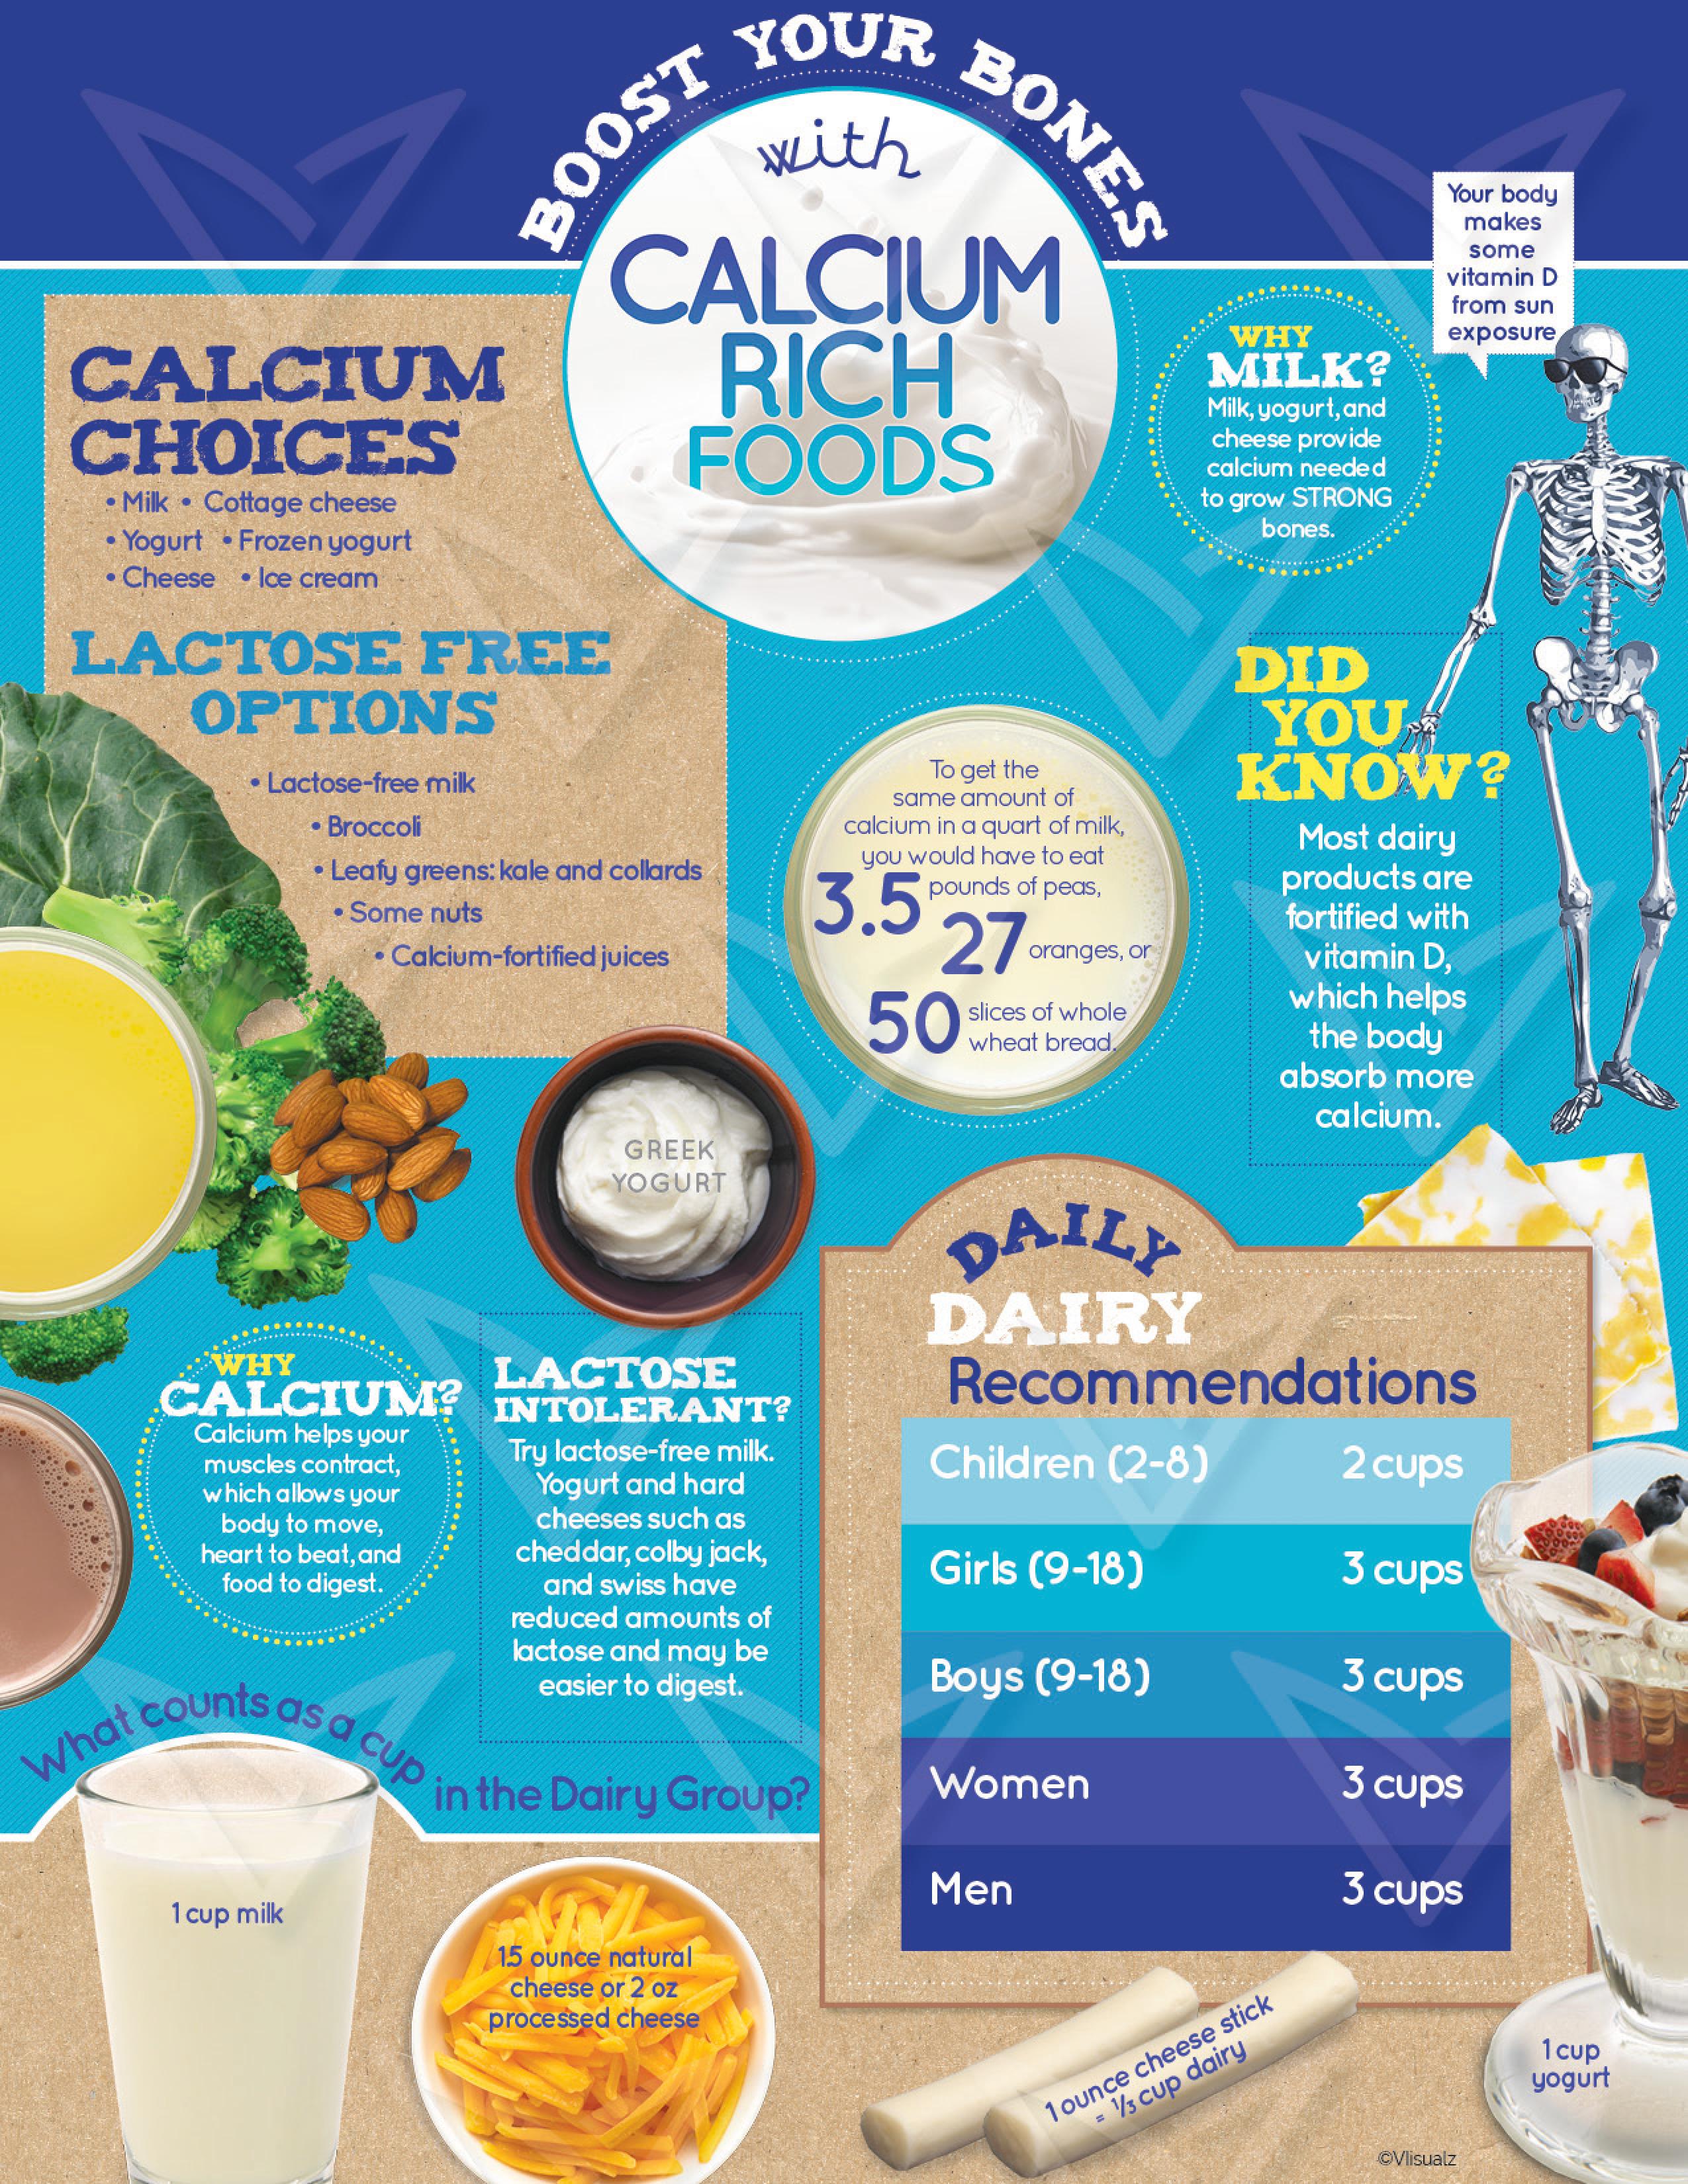 Boost Your Calcium image